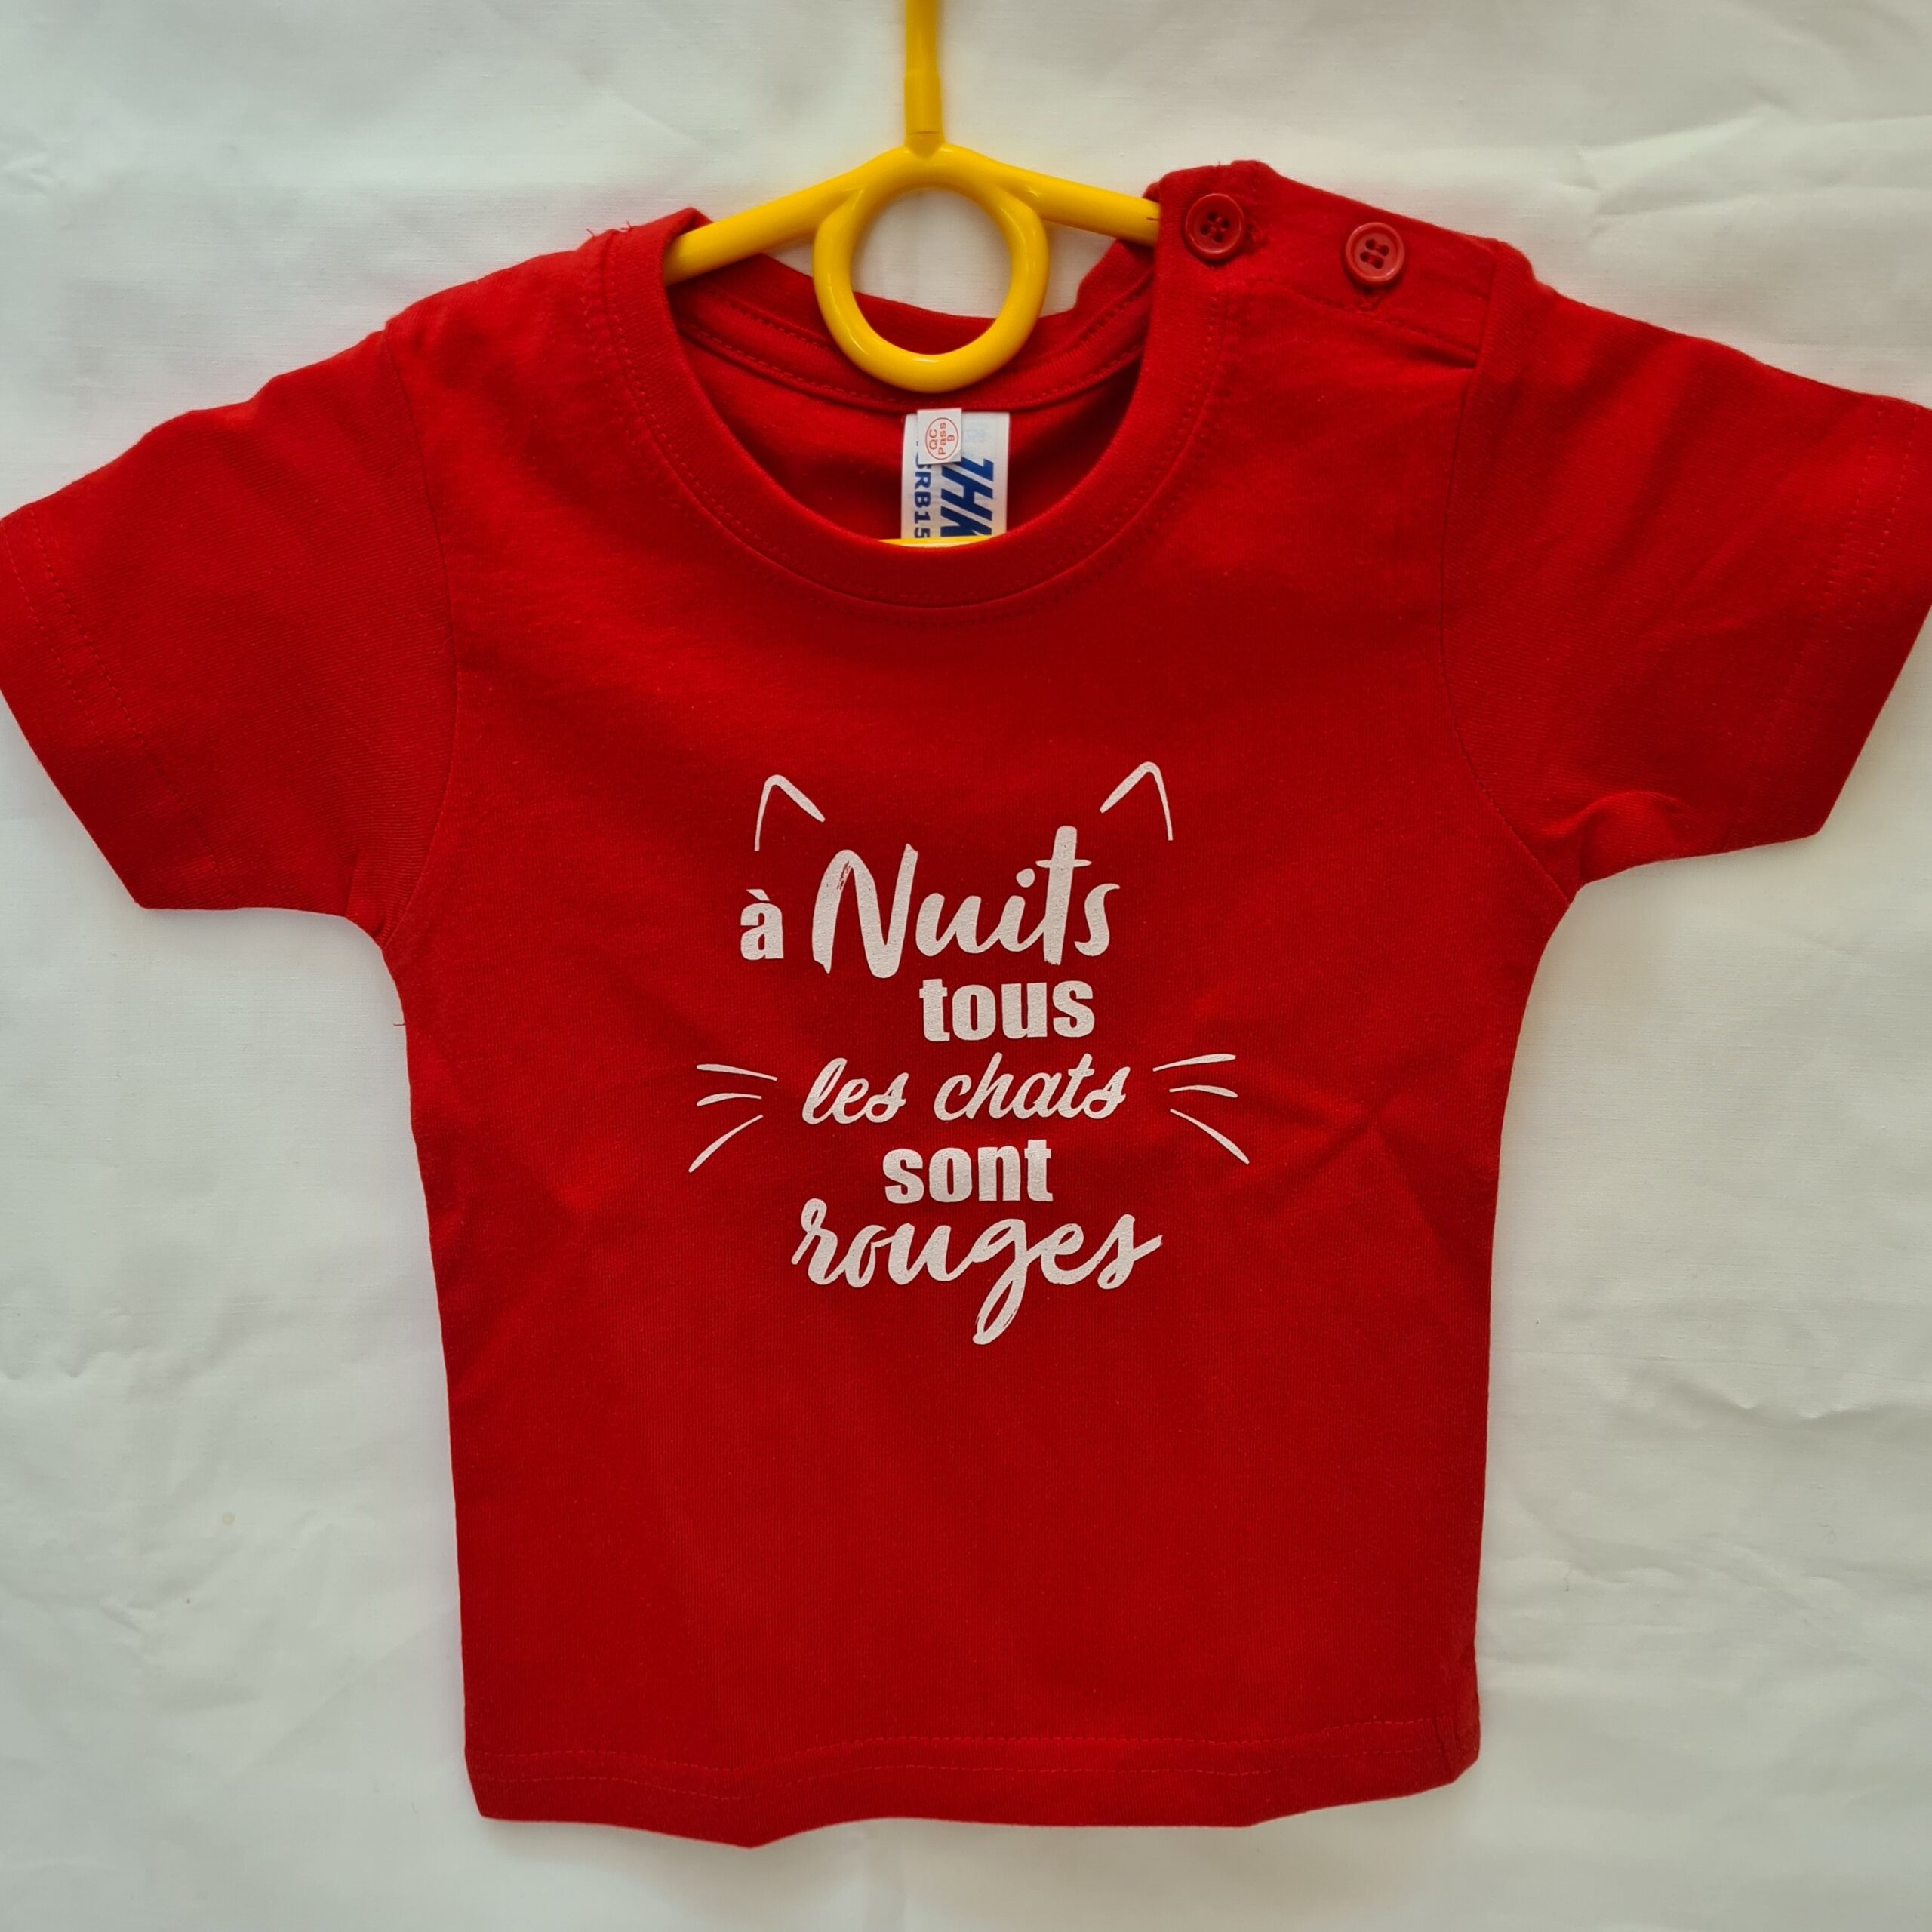 Tee-shirt enfant “A Nuits tous les chats sont rouges” rouge – taille 0